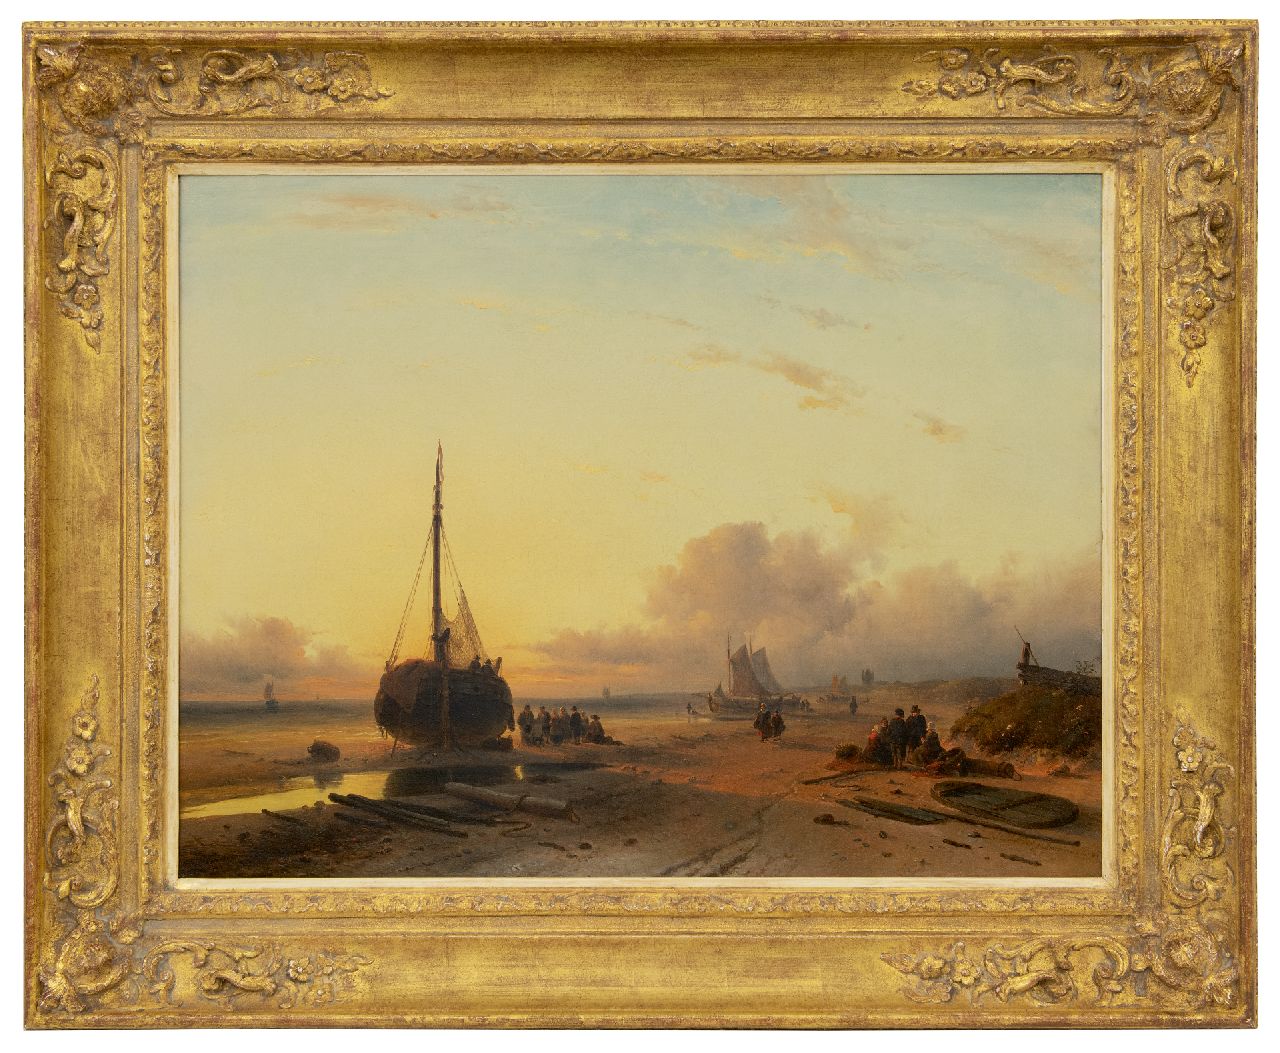 Leickert C.H.J.  | 'Charles' Henri Joseph Leickert | Schilderijen te koop aangeboden | Bomschuiten op het strand bij ondergaande zon, olieverf op doek 58,0 x 75,0 cm, gesigneerd rechtsonder en gedateerd 'London' 1845